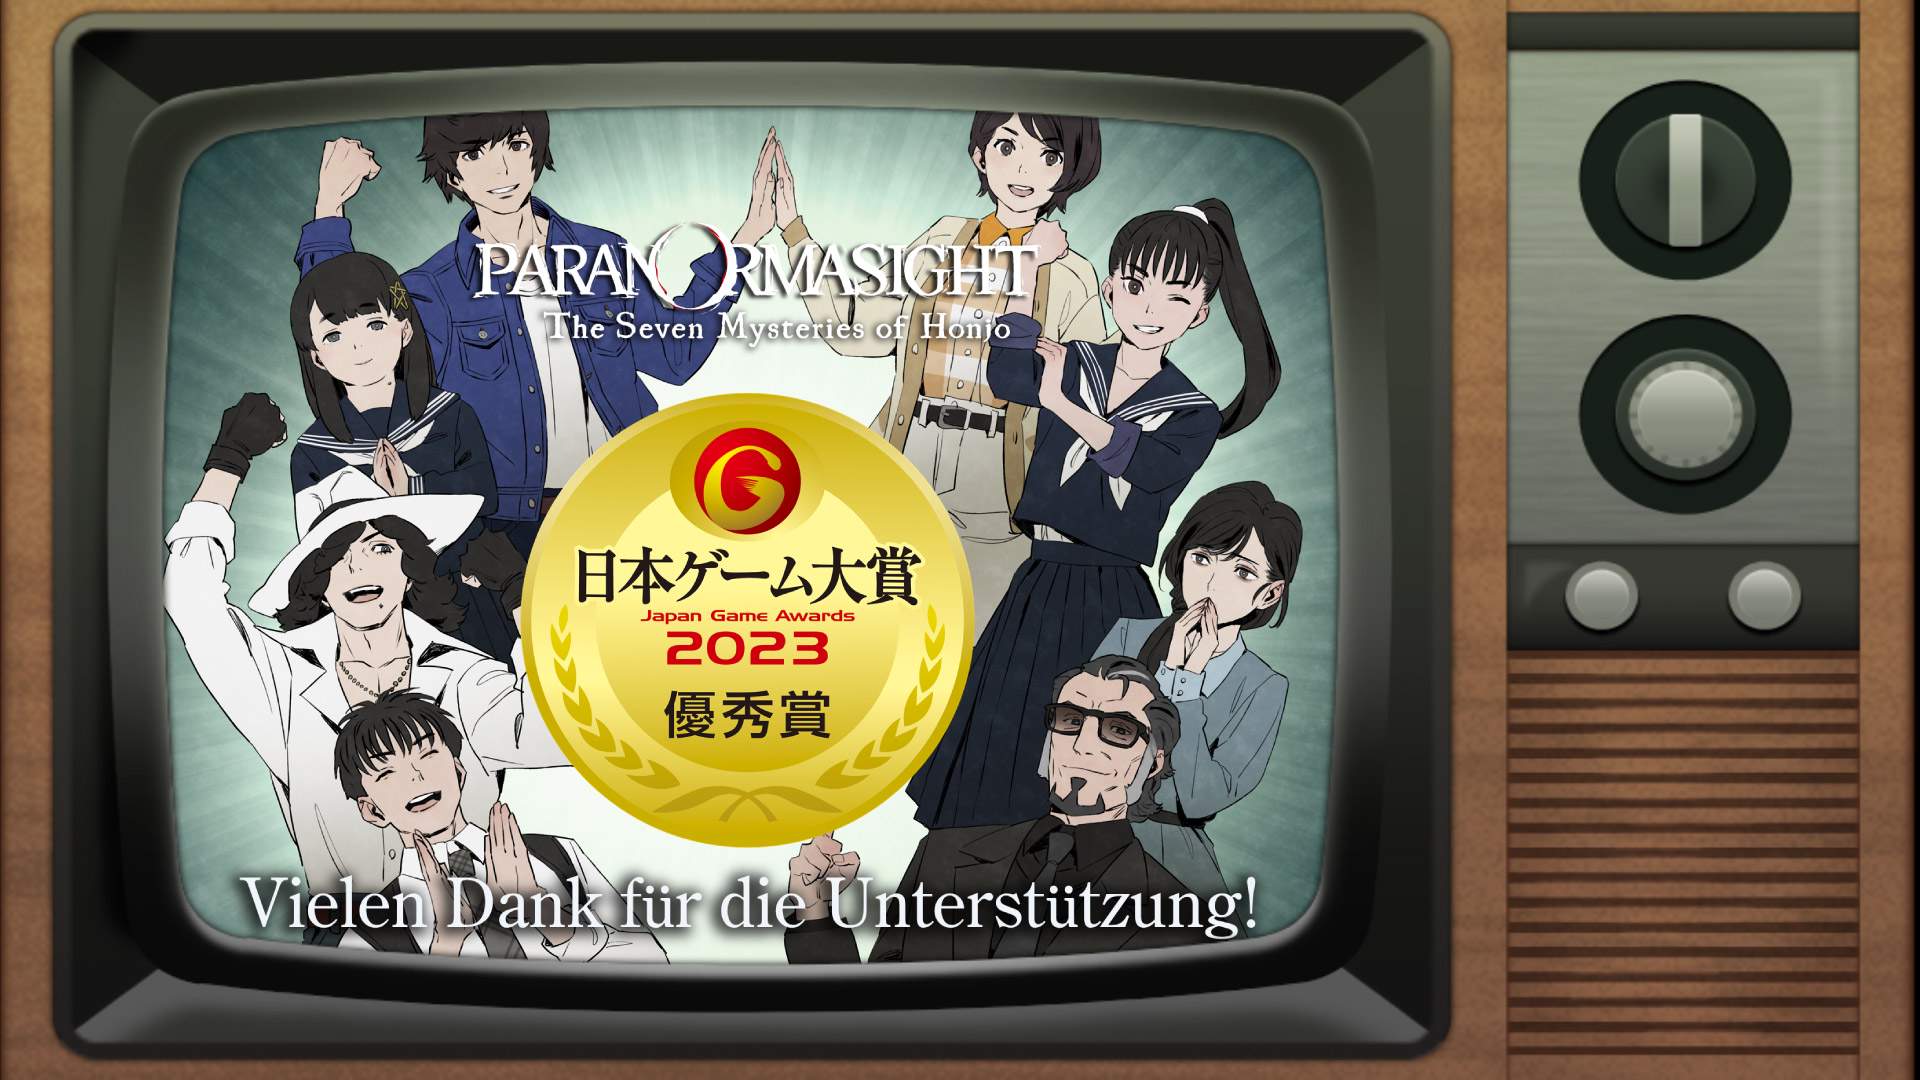 Charaktere aus PARANORMASIGHT, welche in einem Fernseher jubelnd um den Japanese Game Award stehen